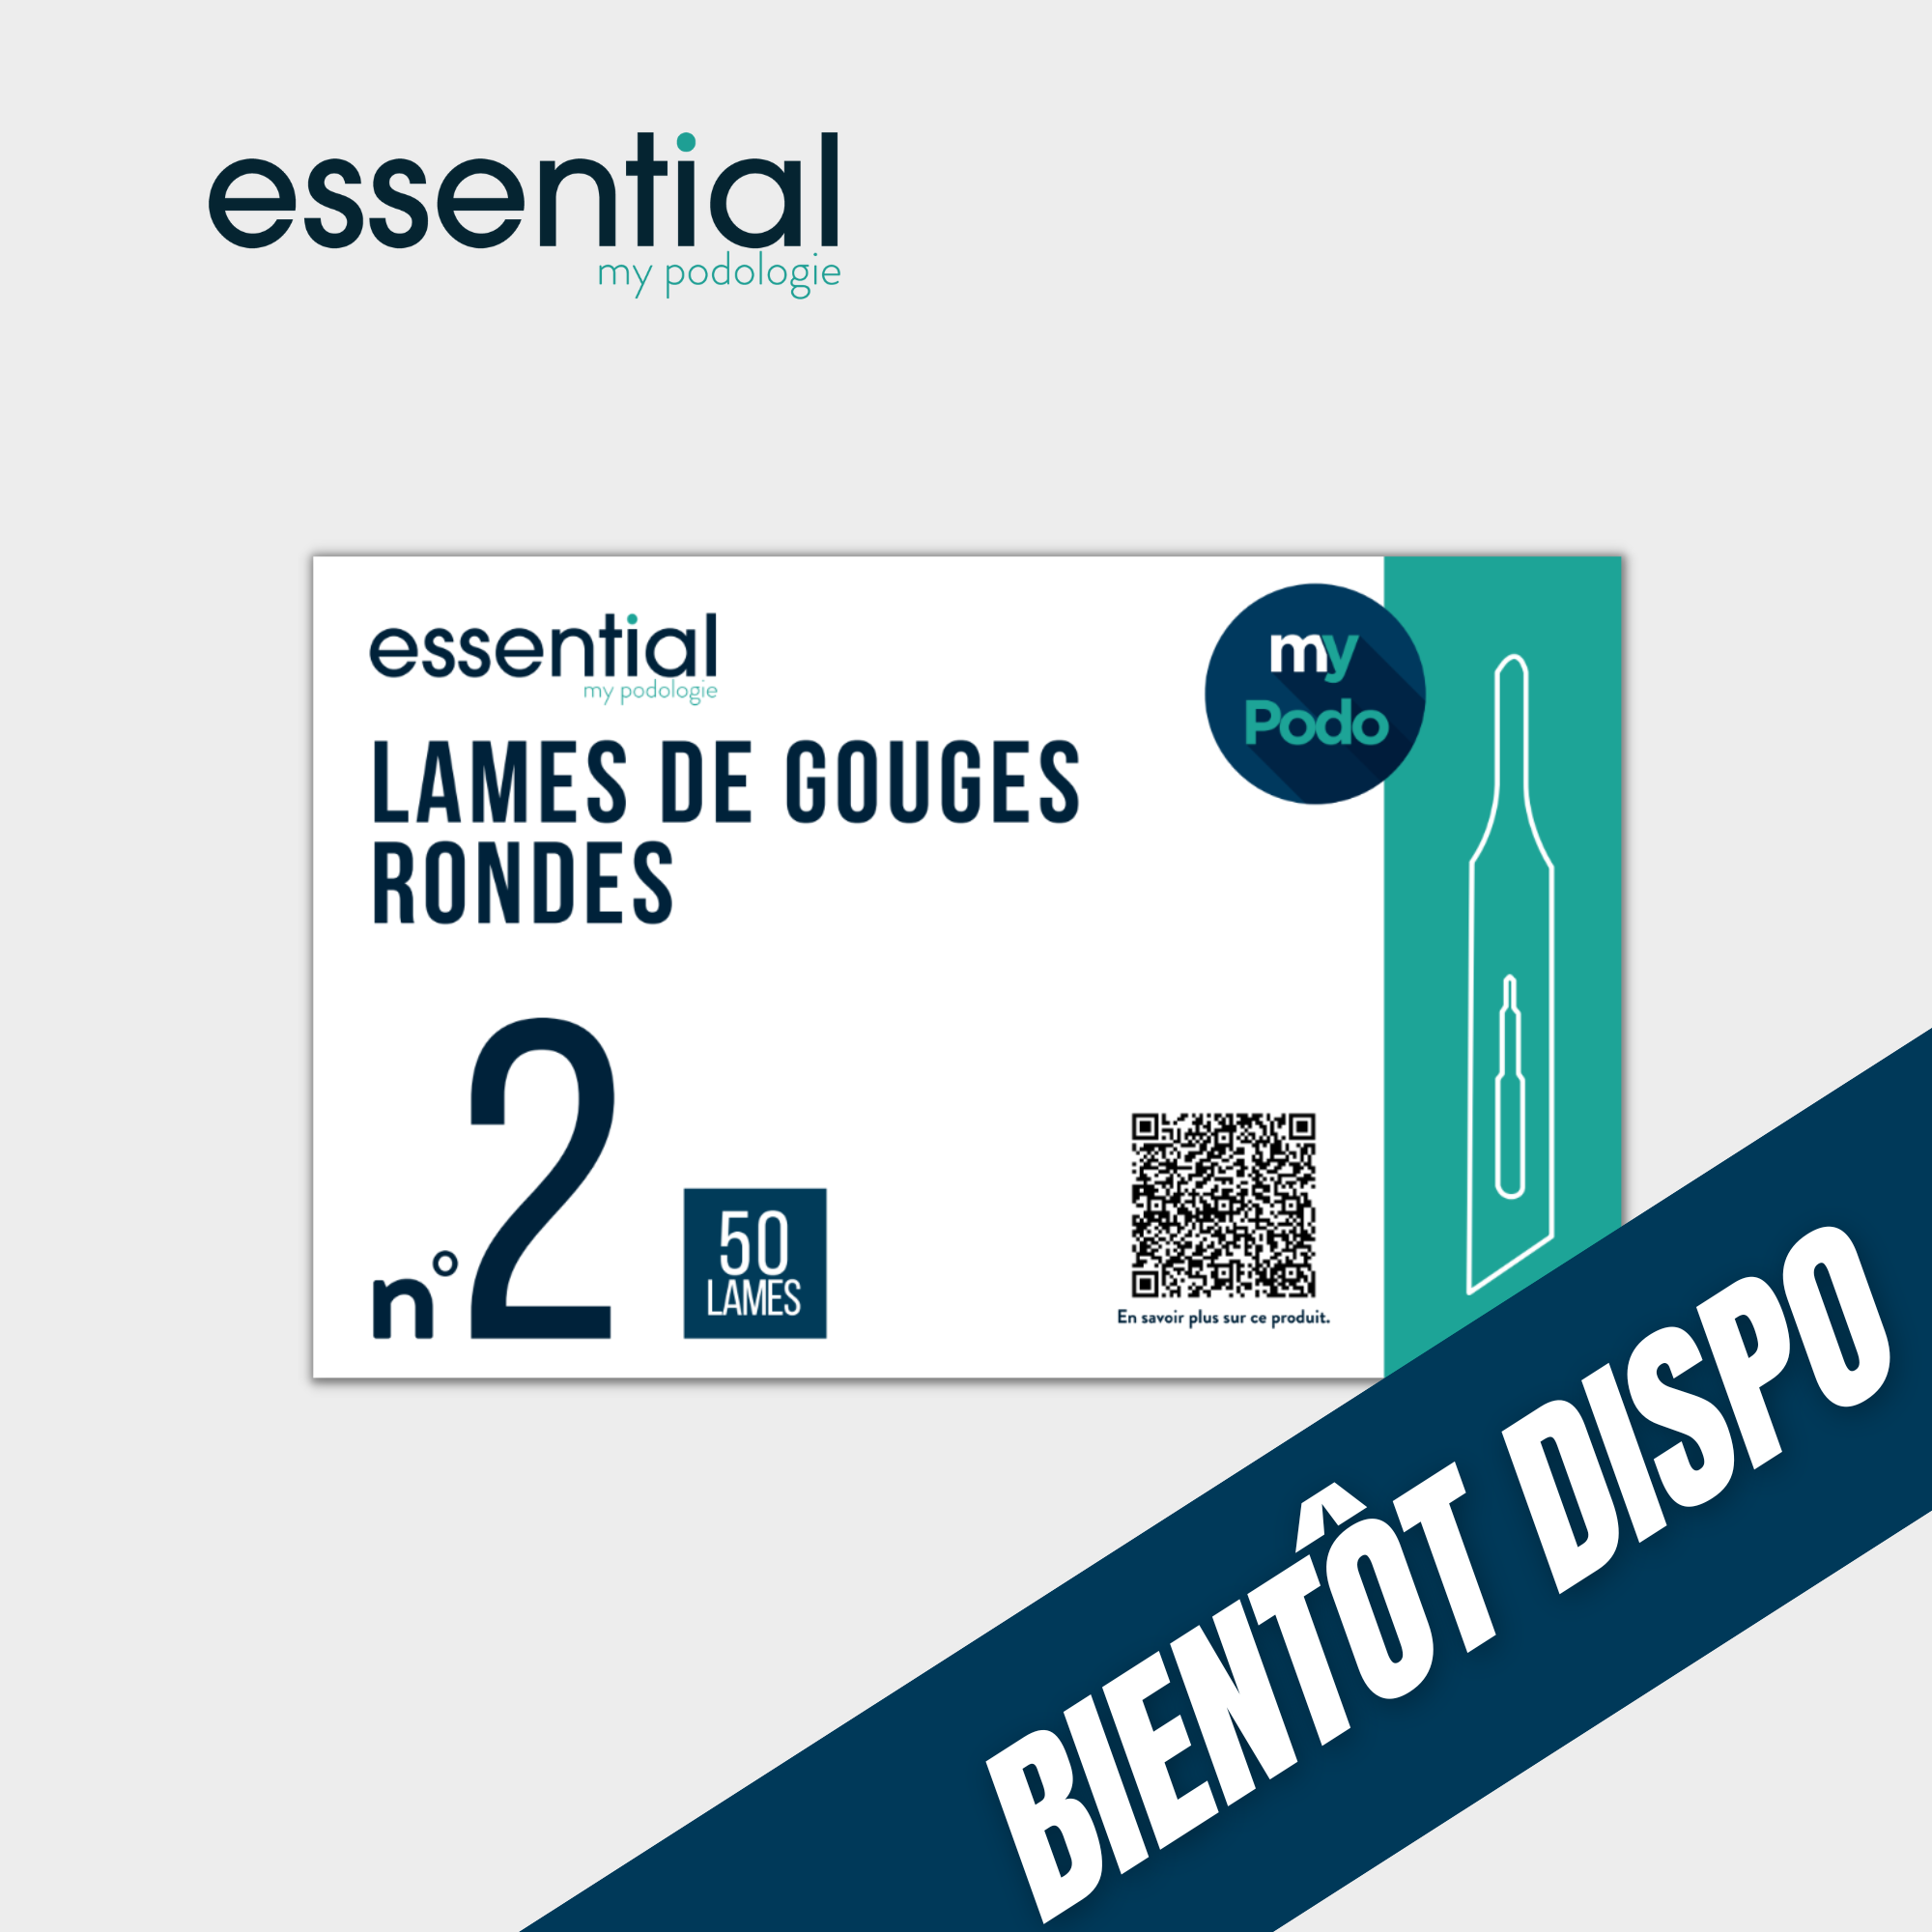 50 Lames de gouges stériles - Rondes - Essential by My Podologie